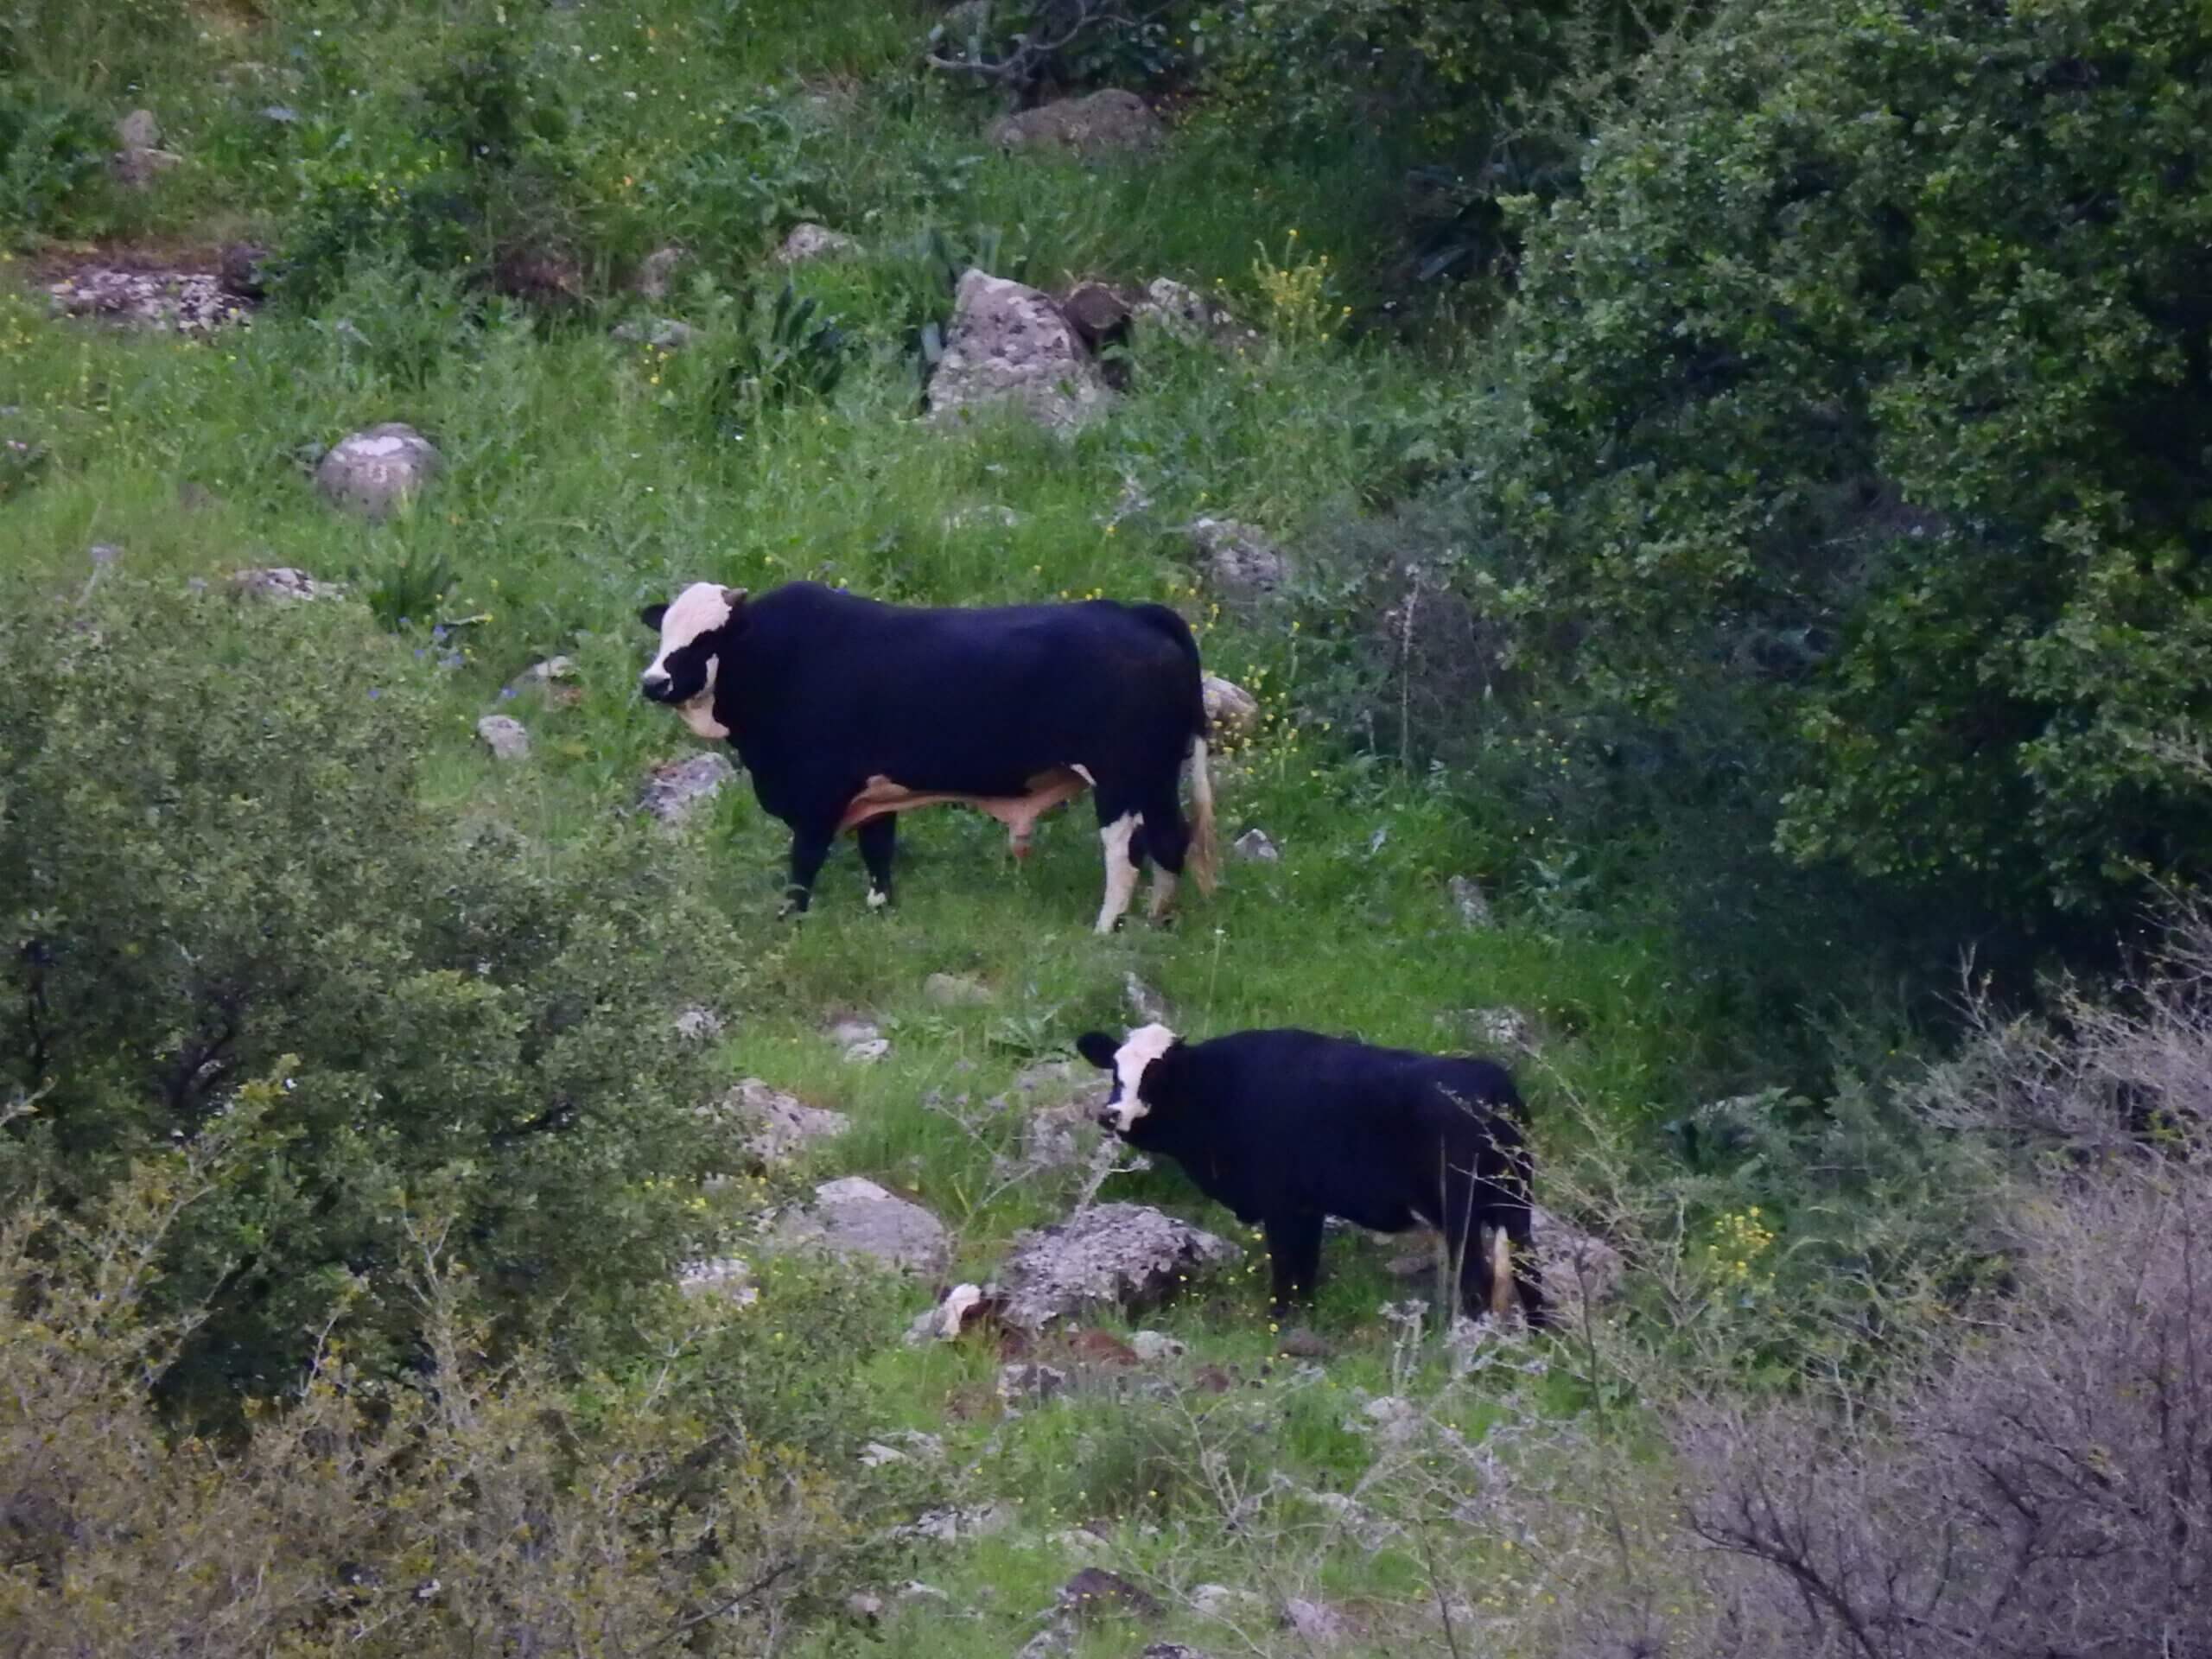 "פרות הפרא הן הרבה יותר אתלטיות, הן מסוגלות לברוח כמו טיל ולרוץ במדרון כמו צבאים". תצלום: רחלי גבריאלי